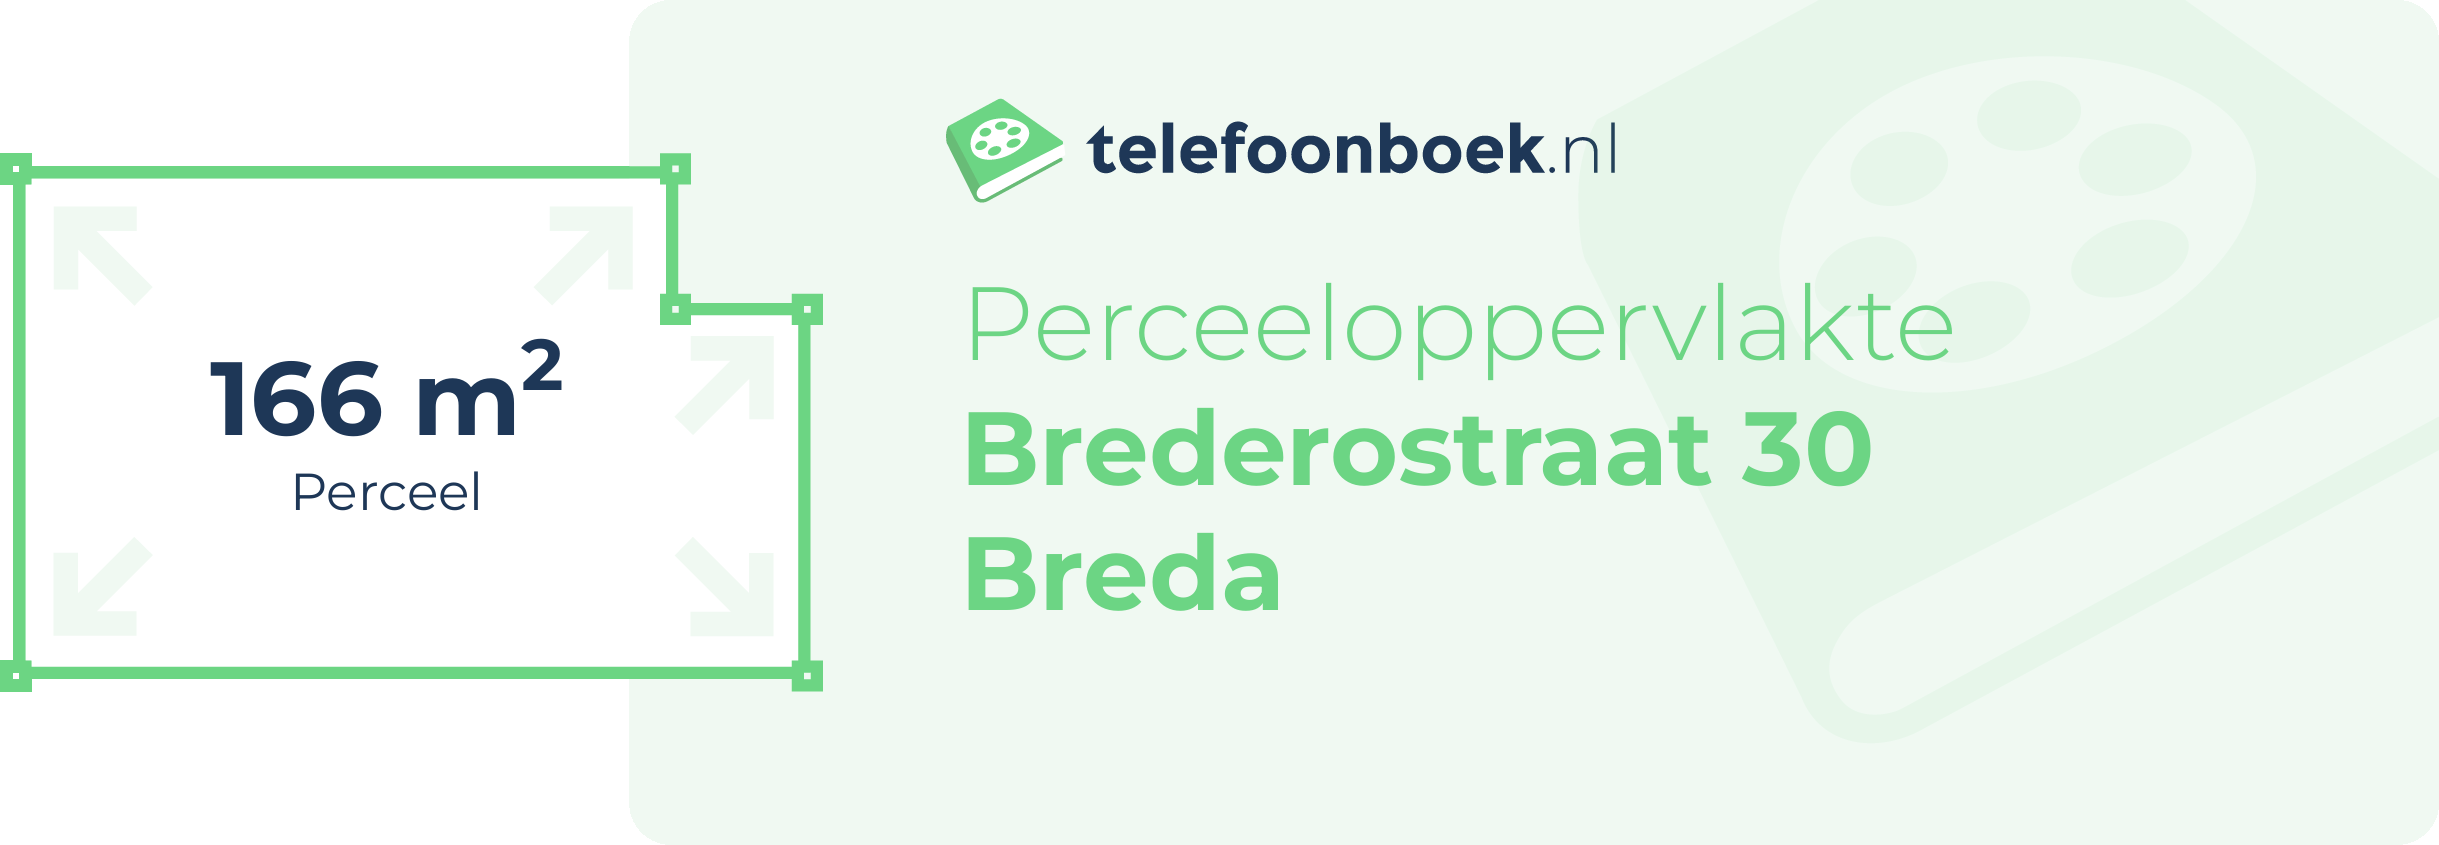 Perceeloppervlakte Brederostraat 30 Breda